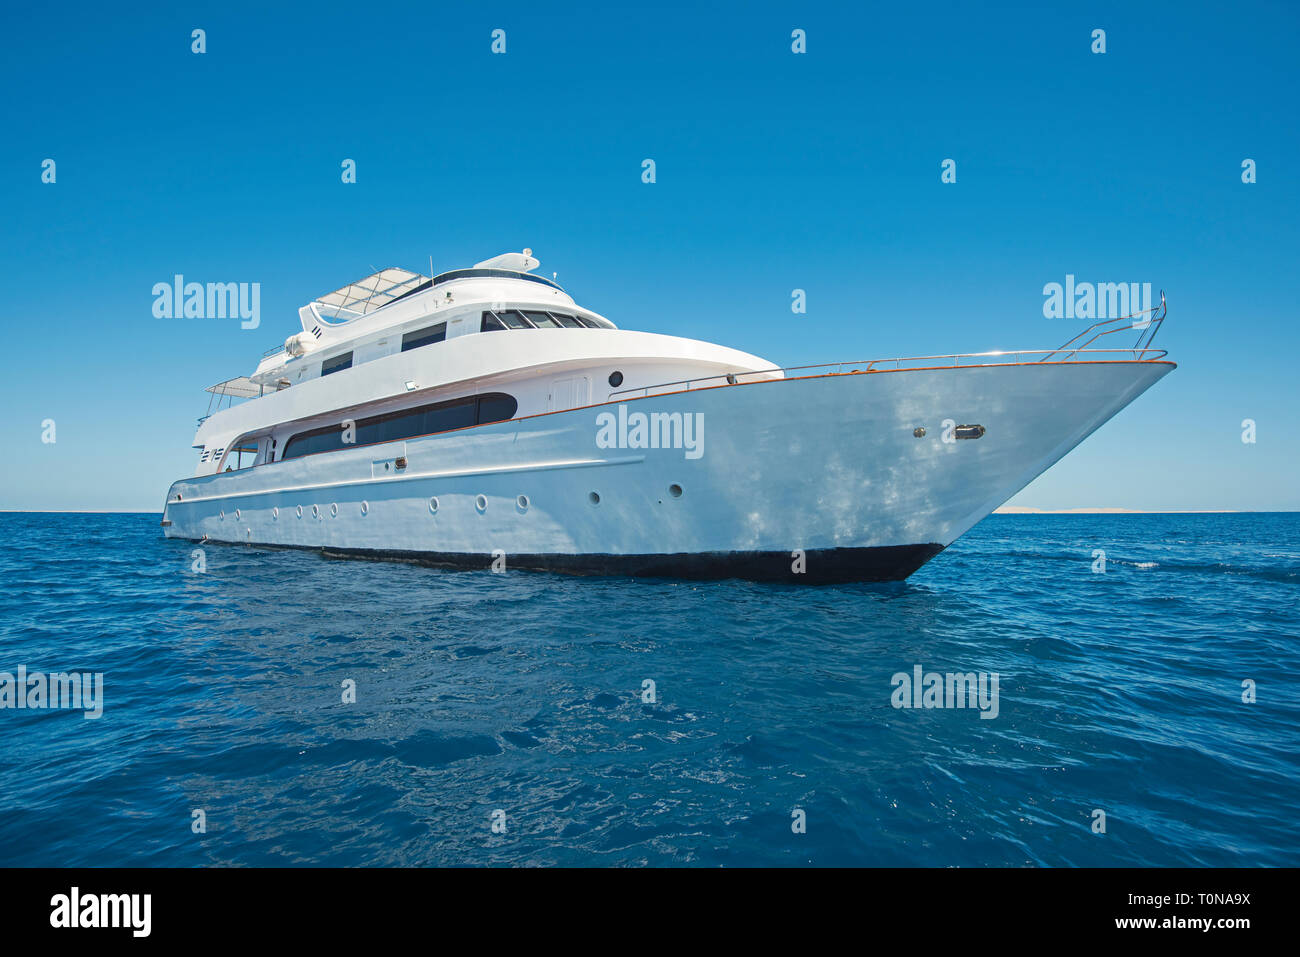 Großen Luxus Motor Yacht segeln auf tropischen Meer Ozean mit blauem Himmel Hintergrund Stockfoto